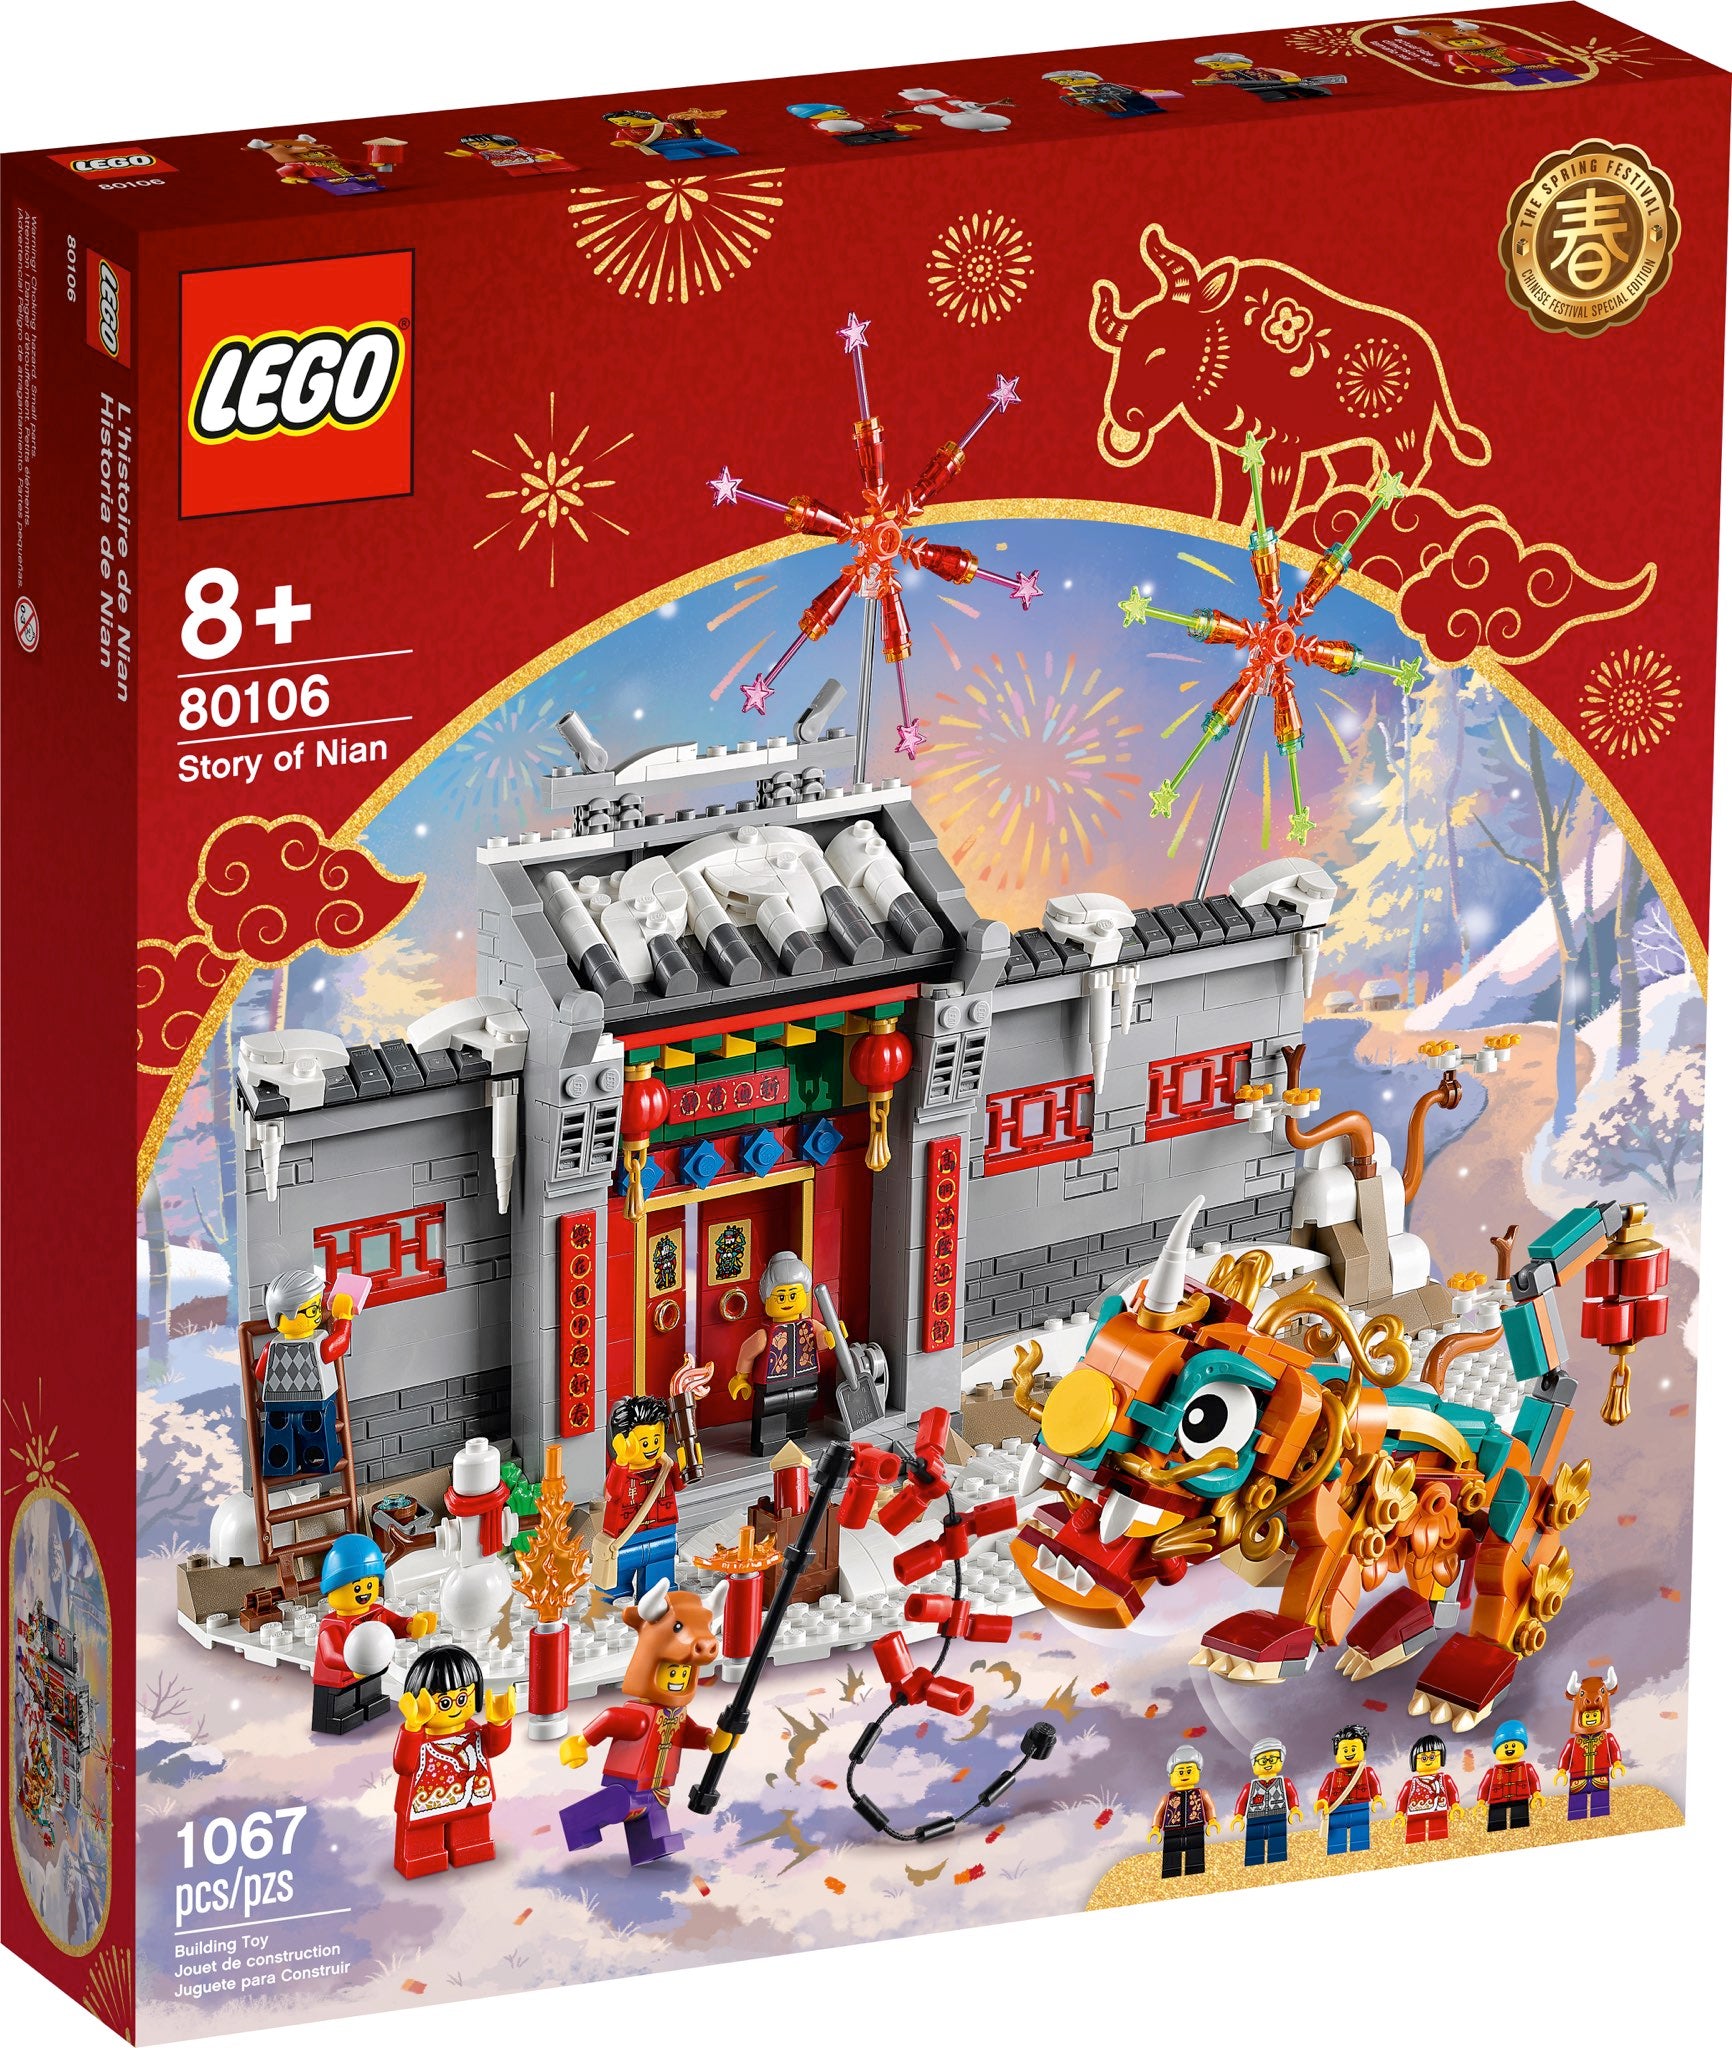 LEGO Geschichte von Nian (80106) - im GOLDSTIEN.SHOP verfügbar mit Gratisversand ab Schweizer Lager! (5702016910230)